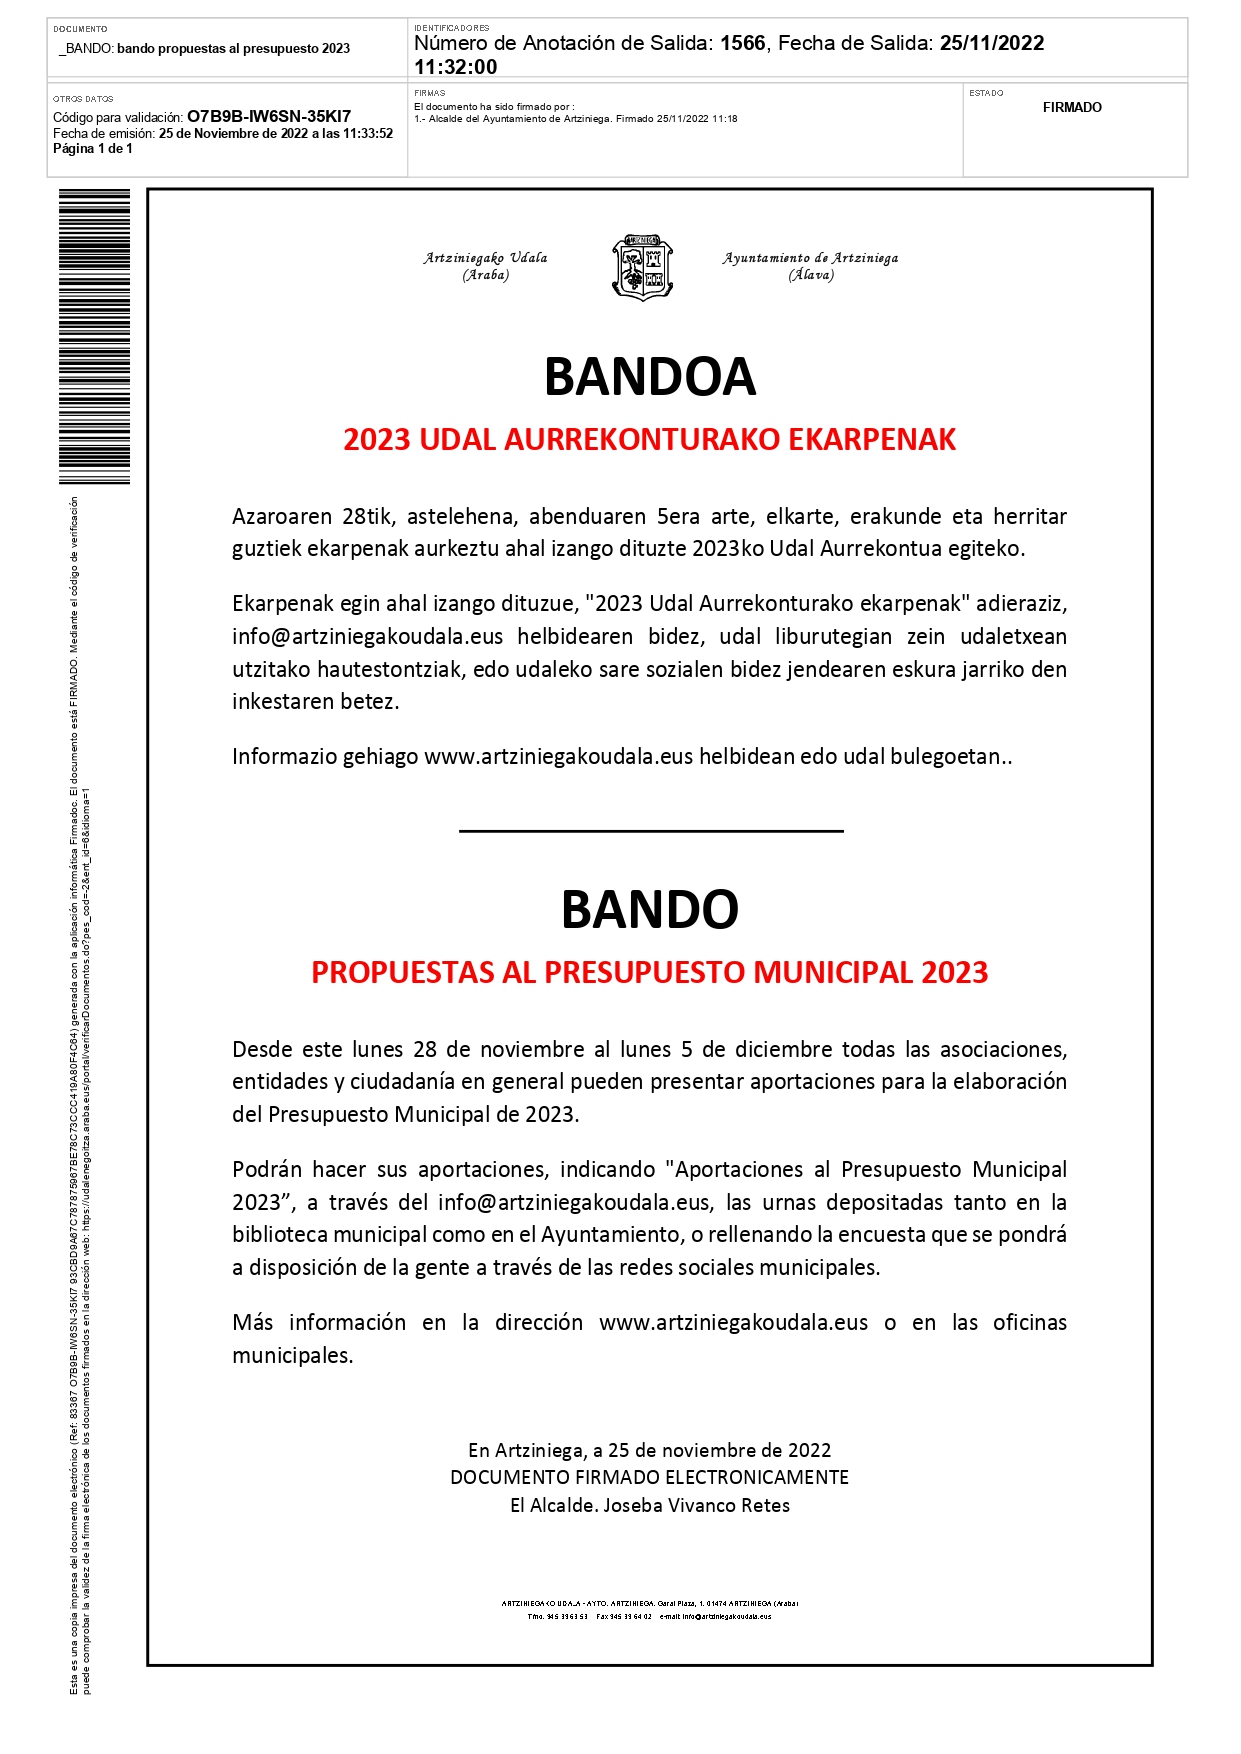 BANDO: PROPUESTAS AL PRESUPUESTO MUNICIPAL 2023